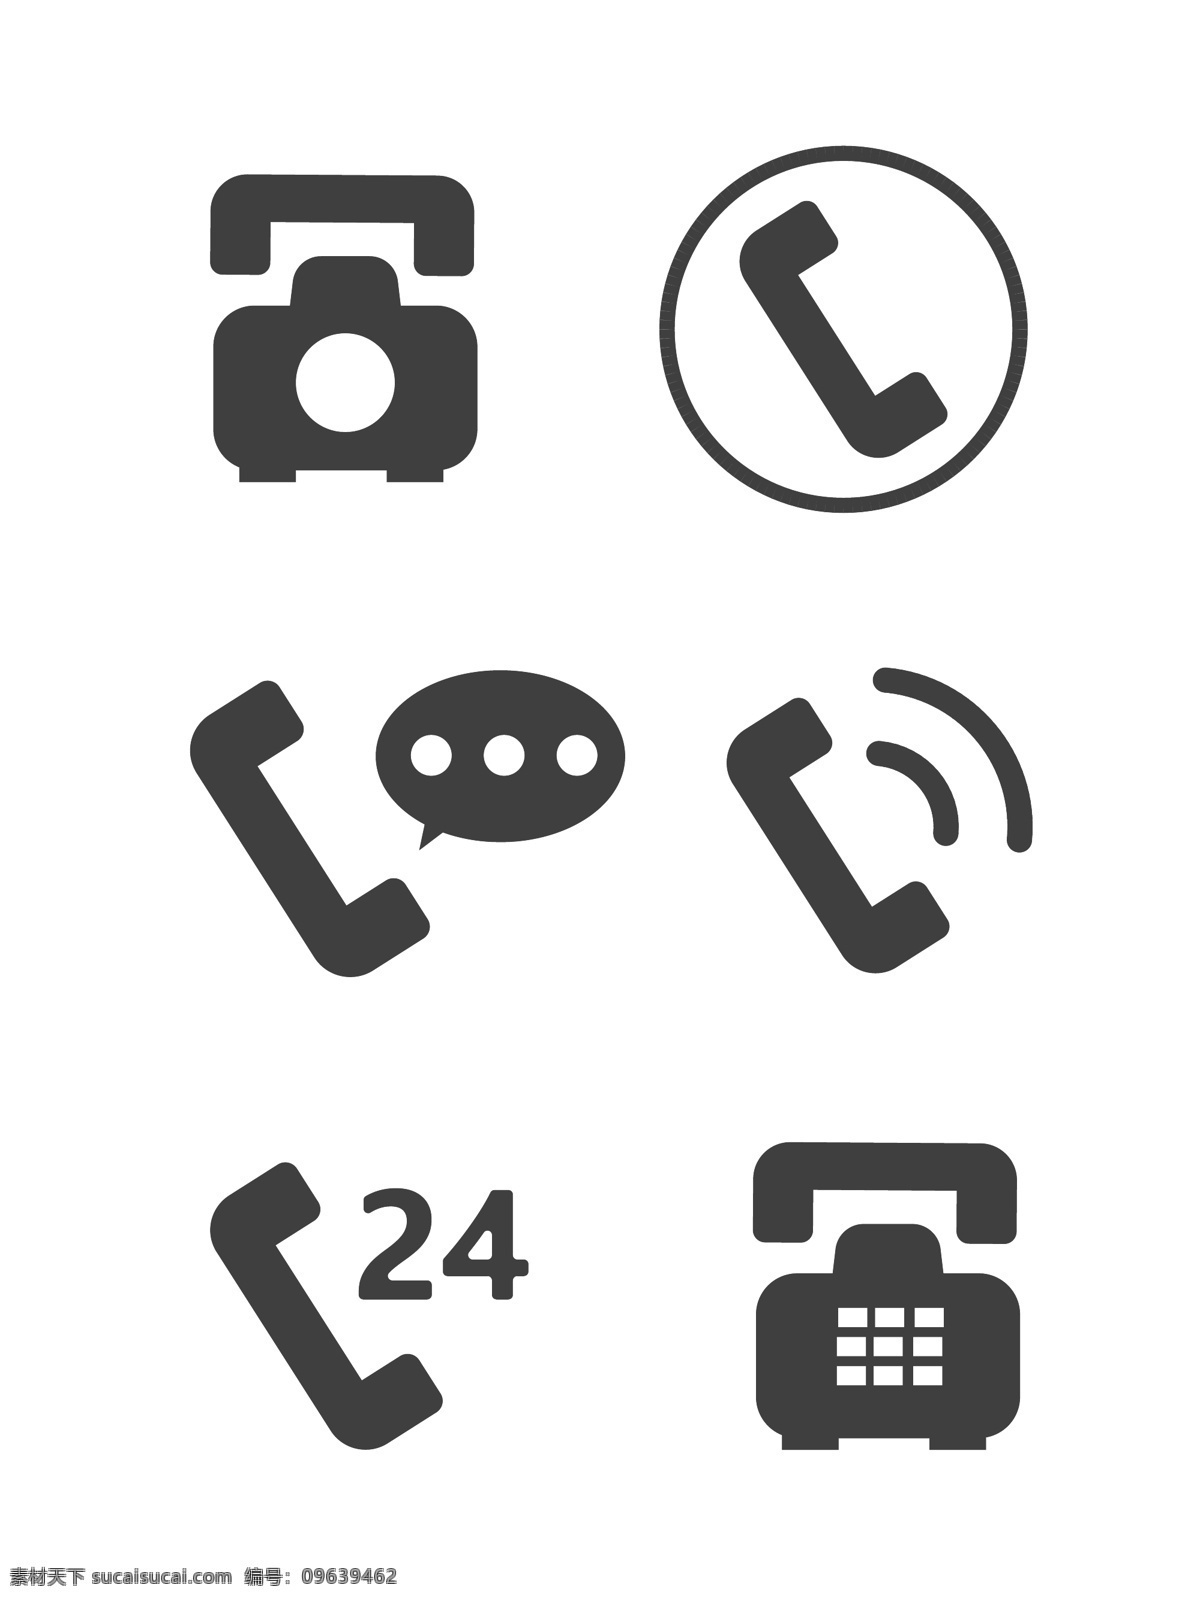 手机 电话 图标 矢量 名片 元素 iocn 商用 网页 手机图标 信息 24小时电话 黑白 联系方式 实用